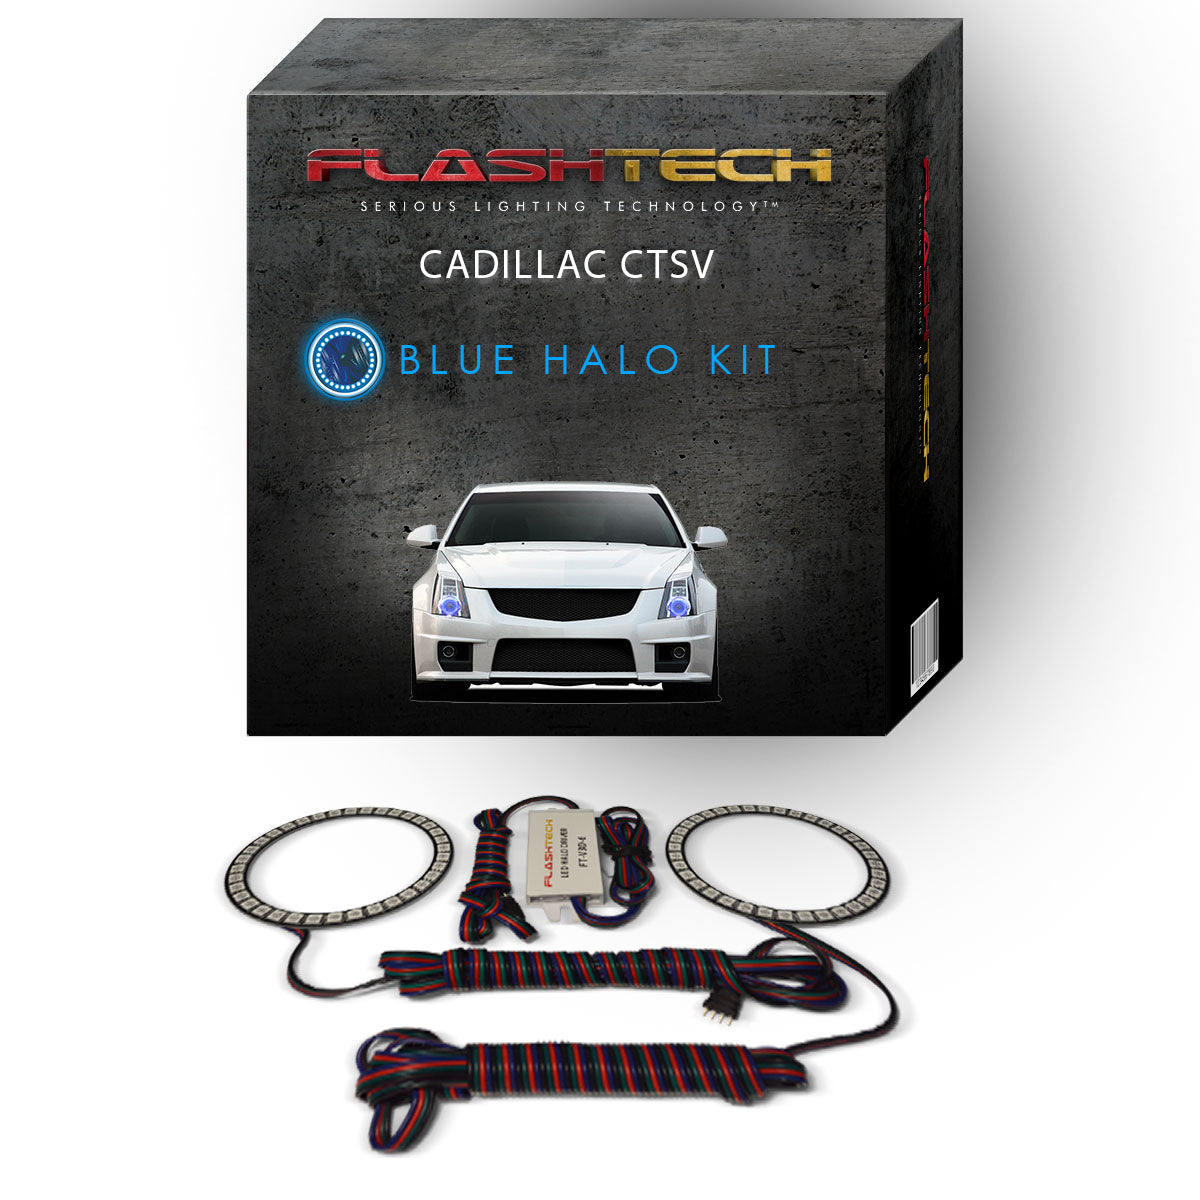 Cadillac-CTS-2008, 2009, 2010, 2011, 2012, 2013, 2014, 2015-LED-Halo-Headlights-RGB-No Remote-CA-CTSV0813-V3H